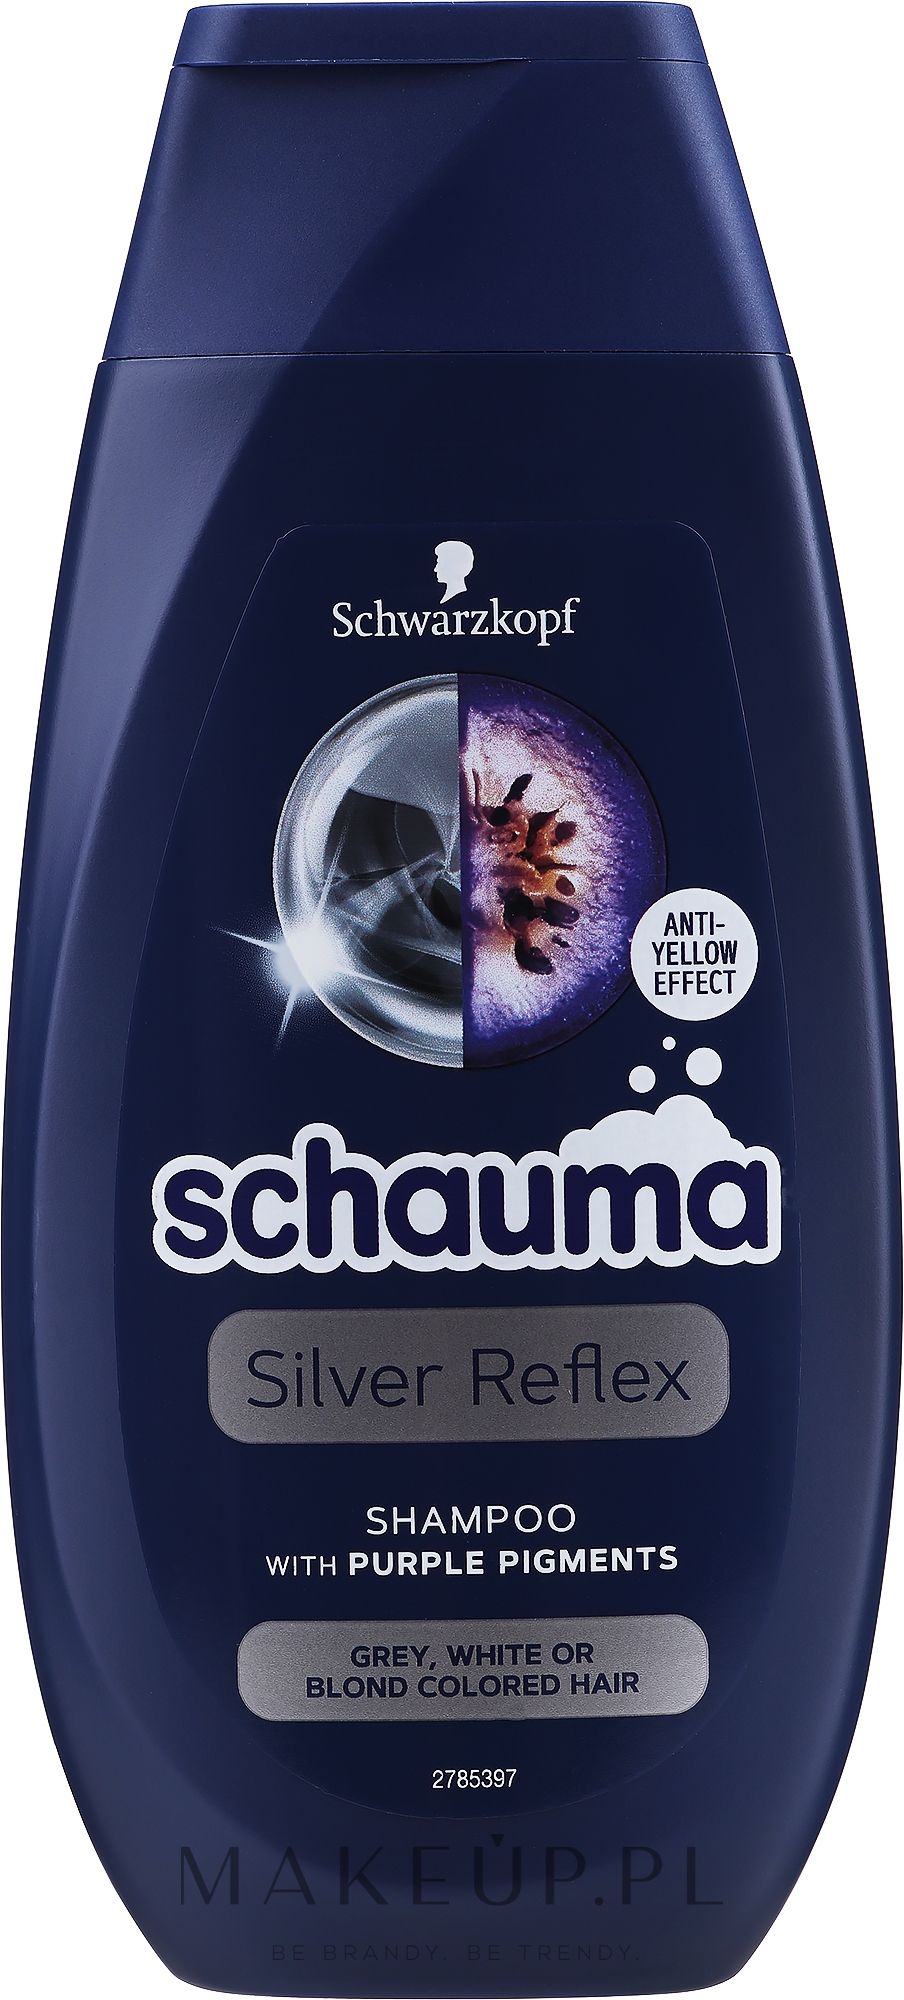 schwarzkopf szampon do włosów siwych